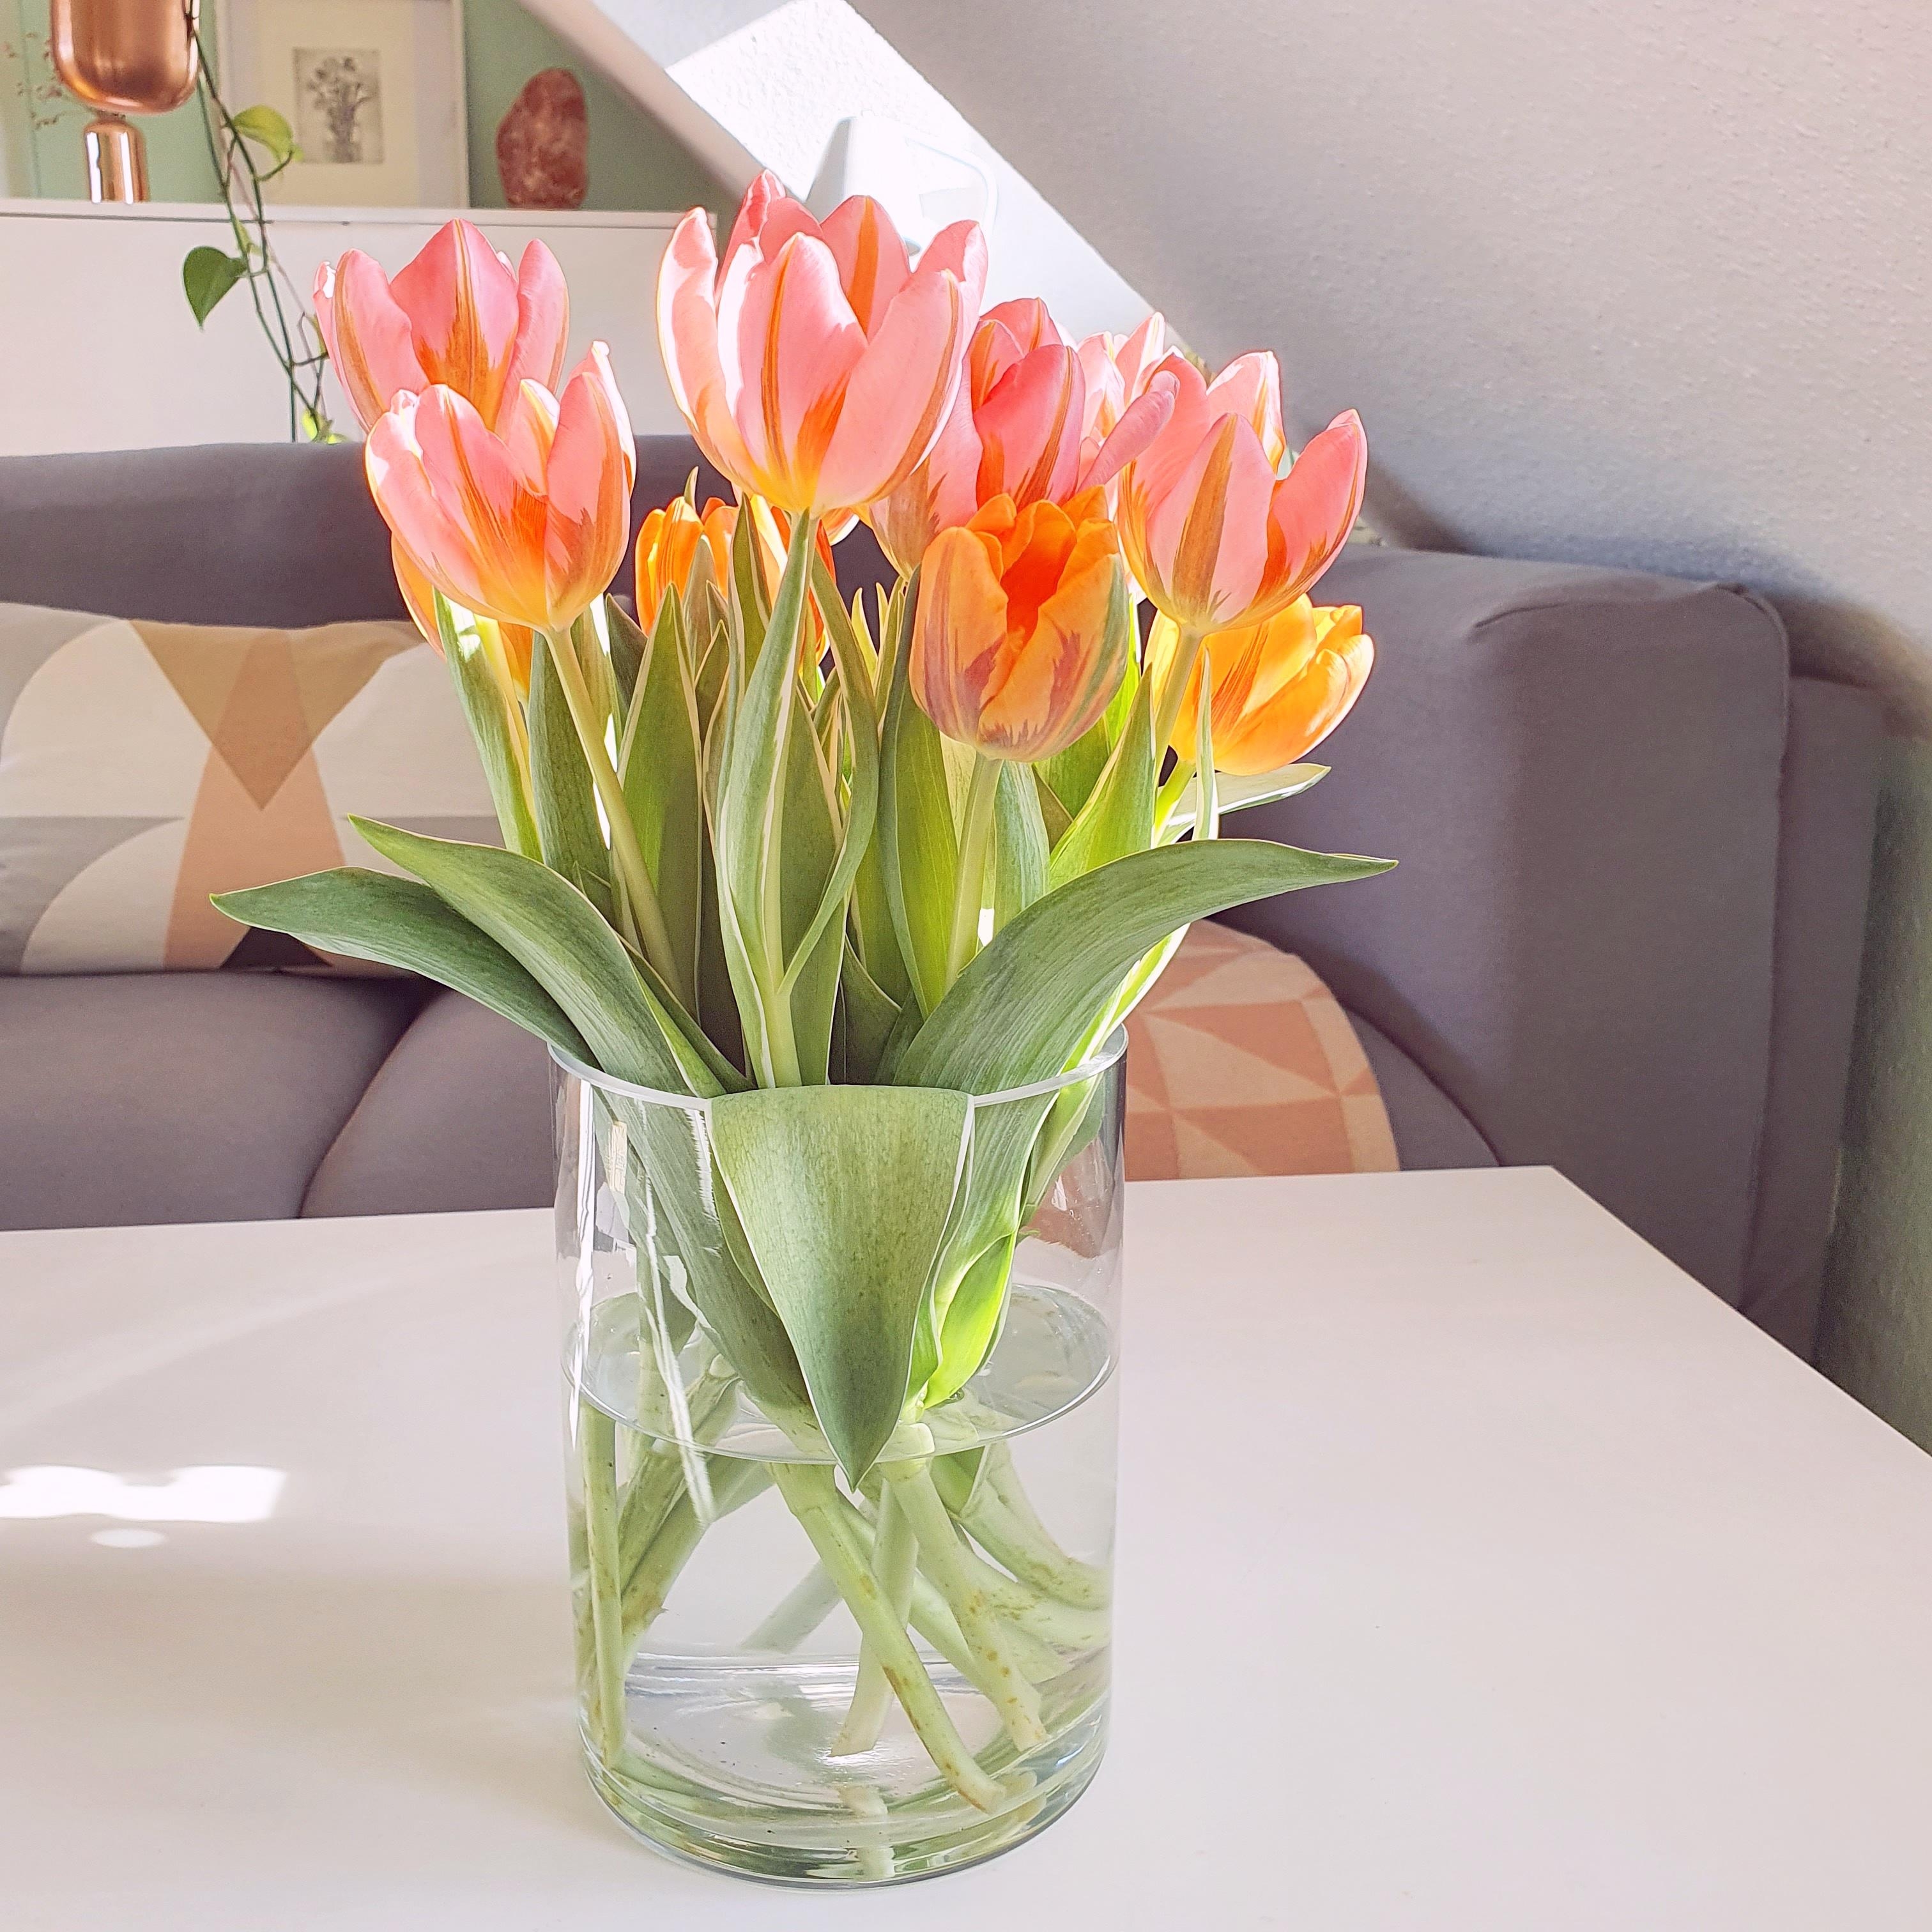 Habt einen schönen sonnigen Sonntag! #tulpen #tulpenliebe #blumenstrauß #wohnzimmer #sonnig 